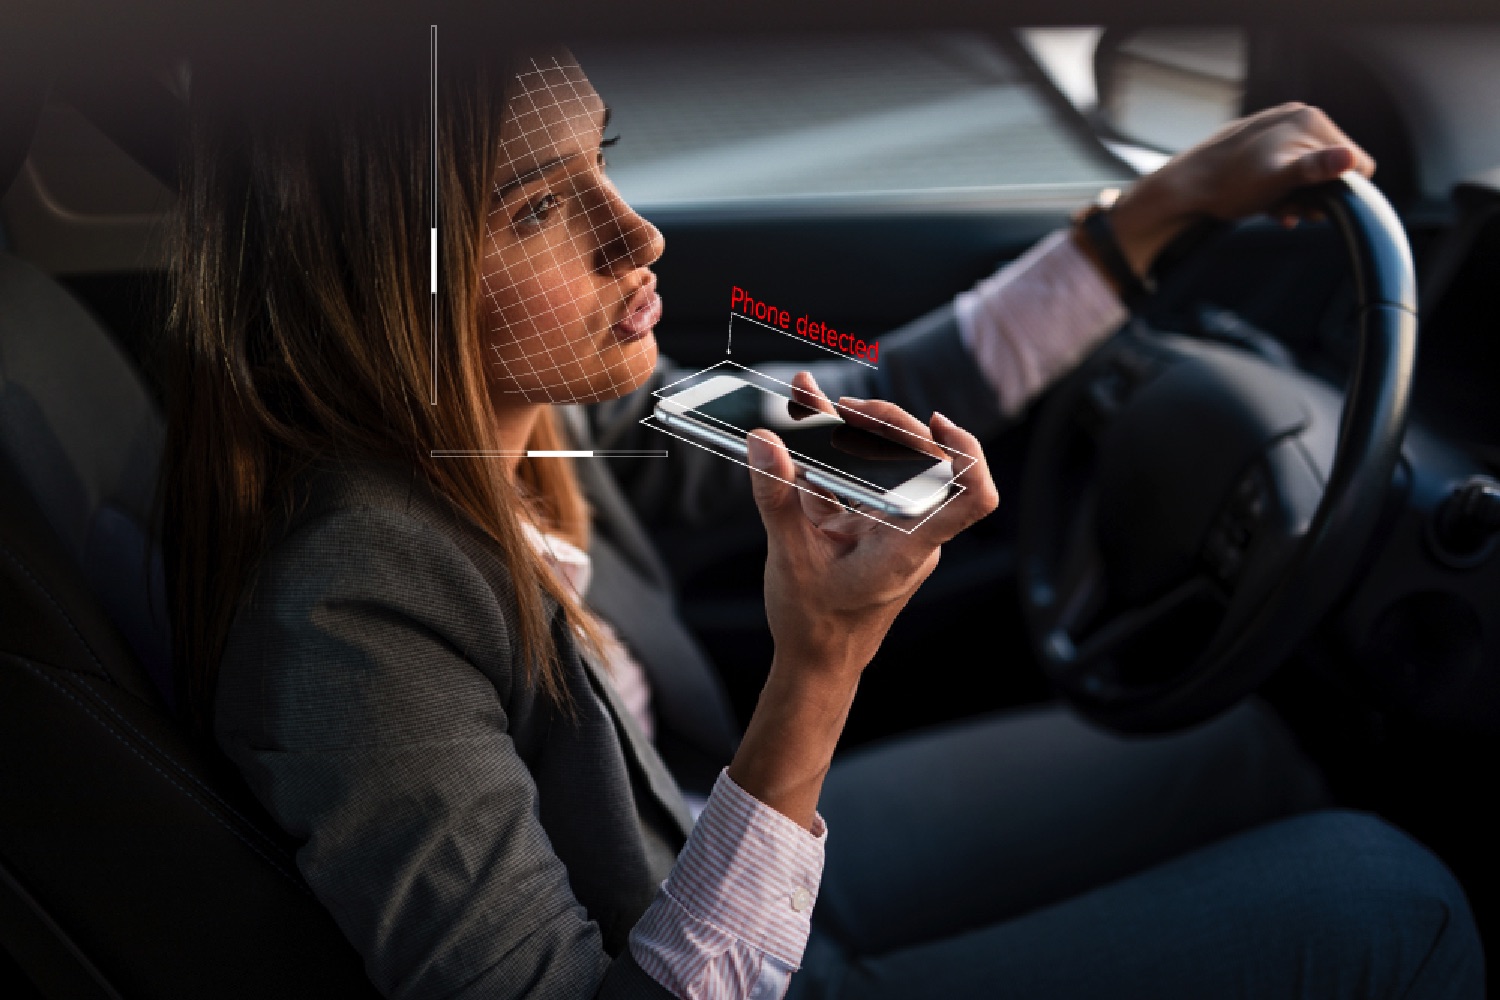 Мама говорит машина. Разговор в машине. Человек в машине с телефоном. Девушка с мобильным телефоном. Курит за рулем.